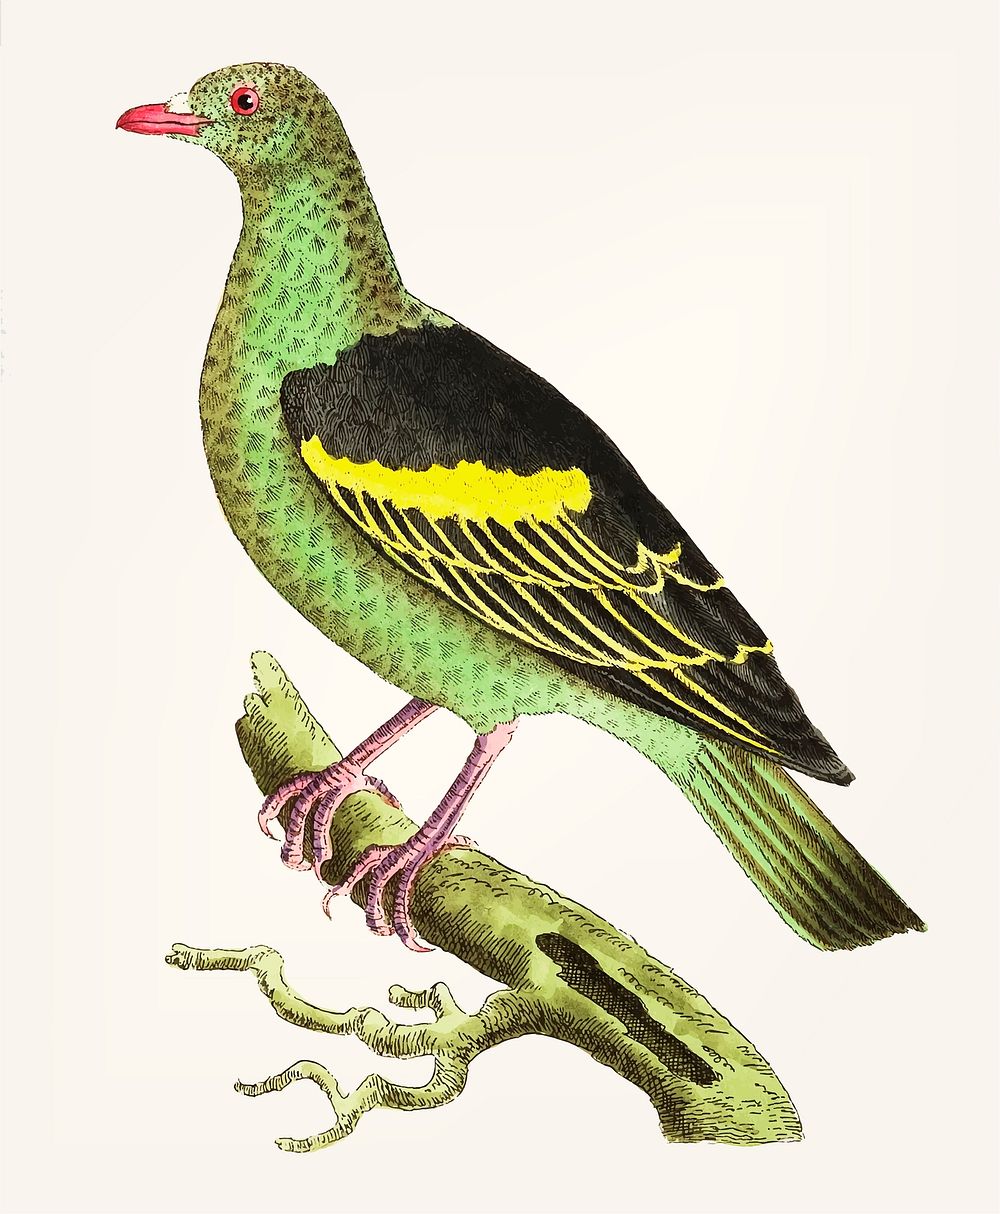 Vintage illustration of olive-green pigeon